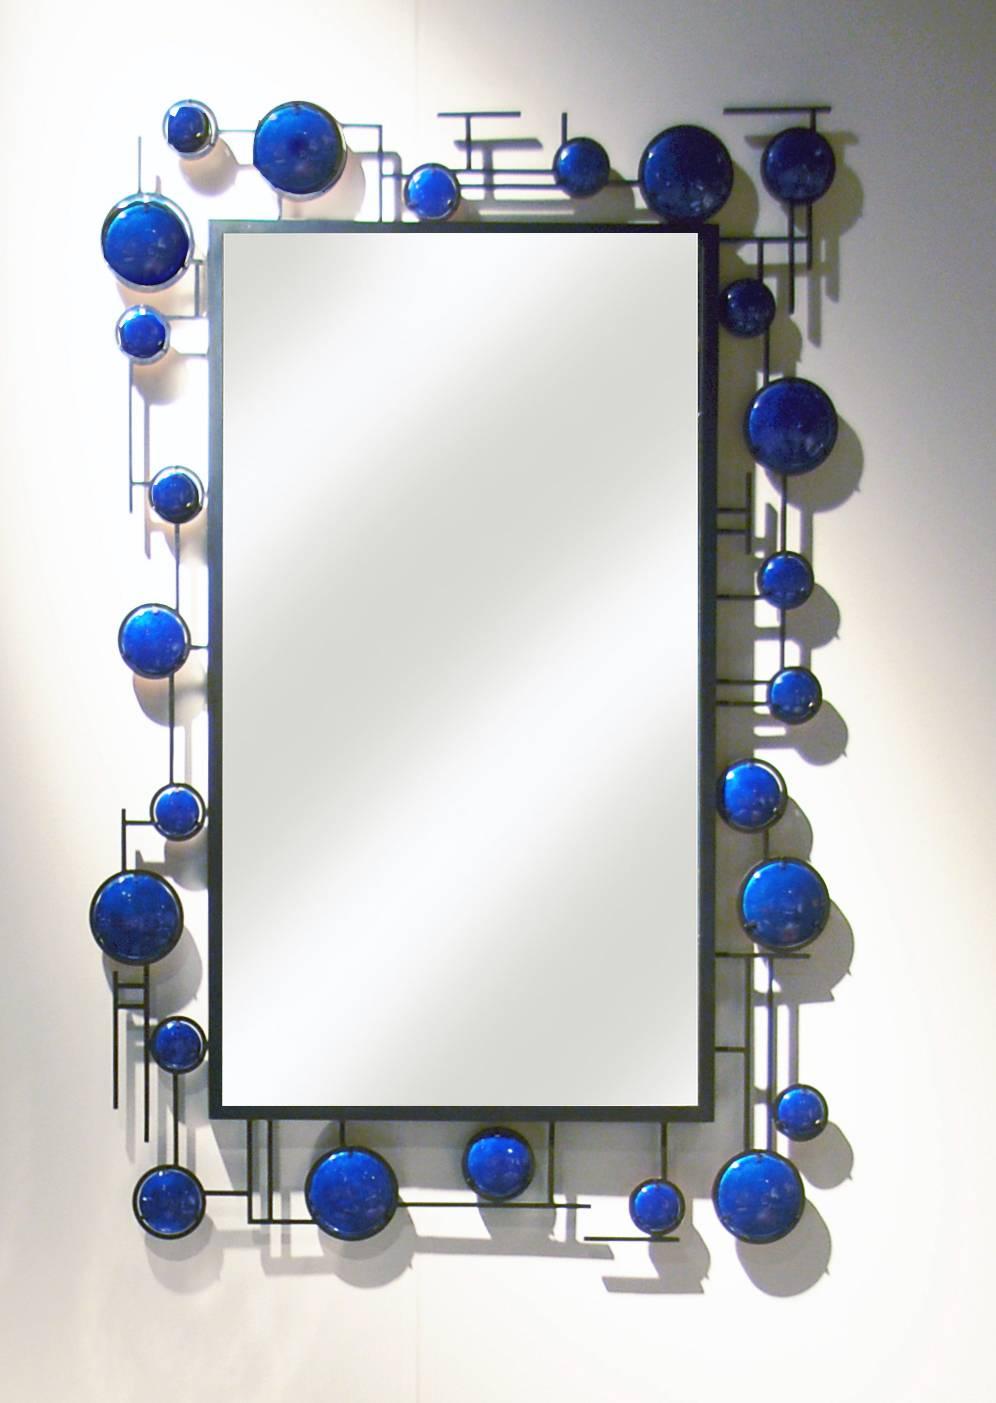 Dieser blaue Emaille-Spiegel von Christophe Côme wurde 2016 aus Kupfer und blauer Emaille hergestellt. Das Stück kann horizontal oder vertikal installiert werden, und wir können individuelle Spiegelbestellungen annehmen. 

Côme arbeitet in Paris,